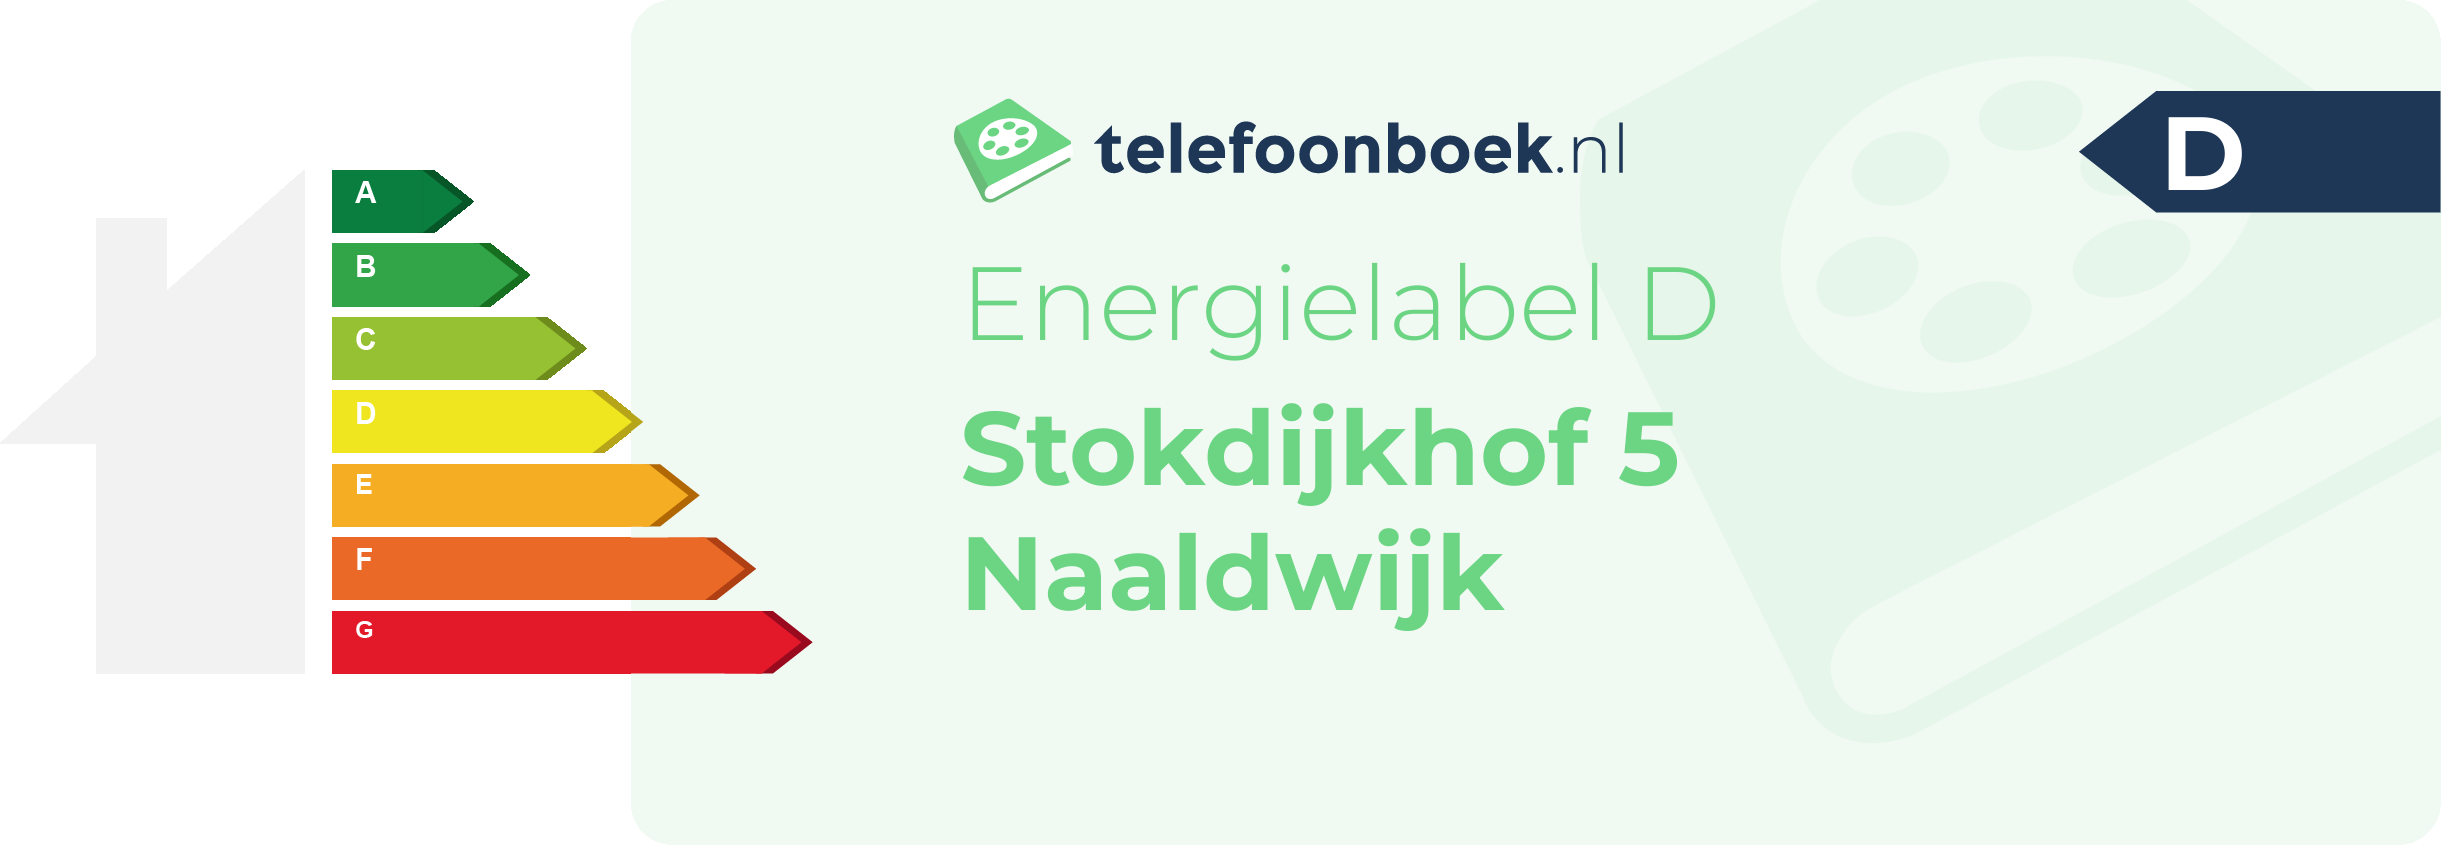 Energielabel Stokdijkhof 5 Naaldwijk